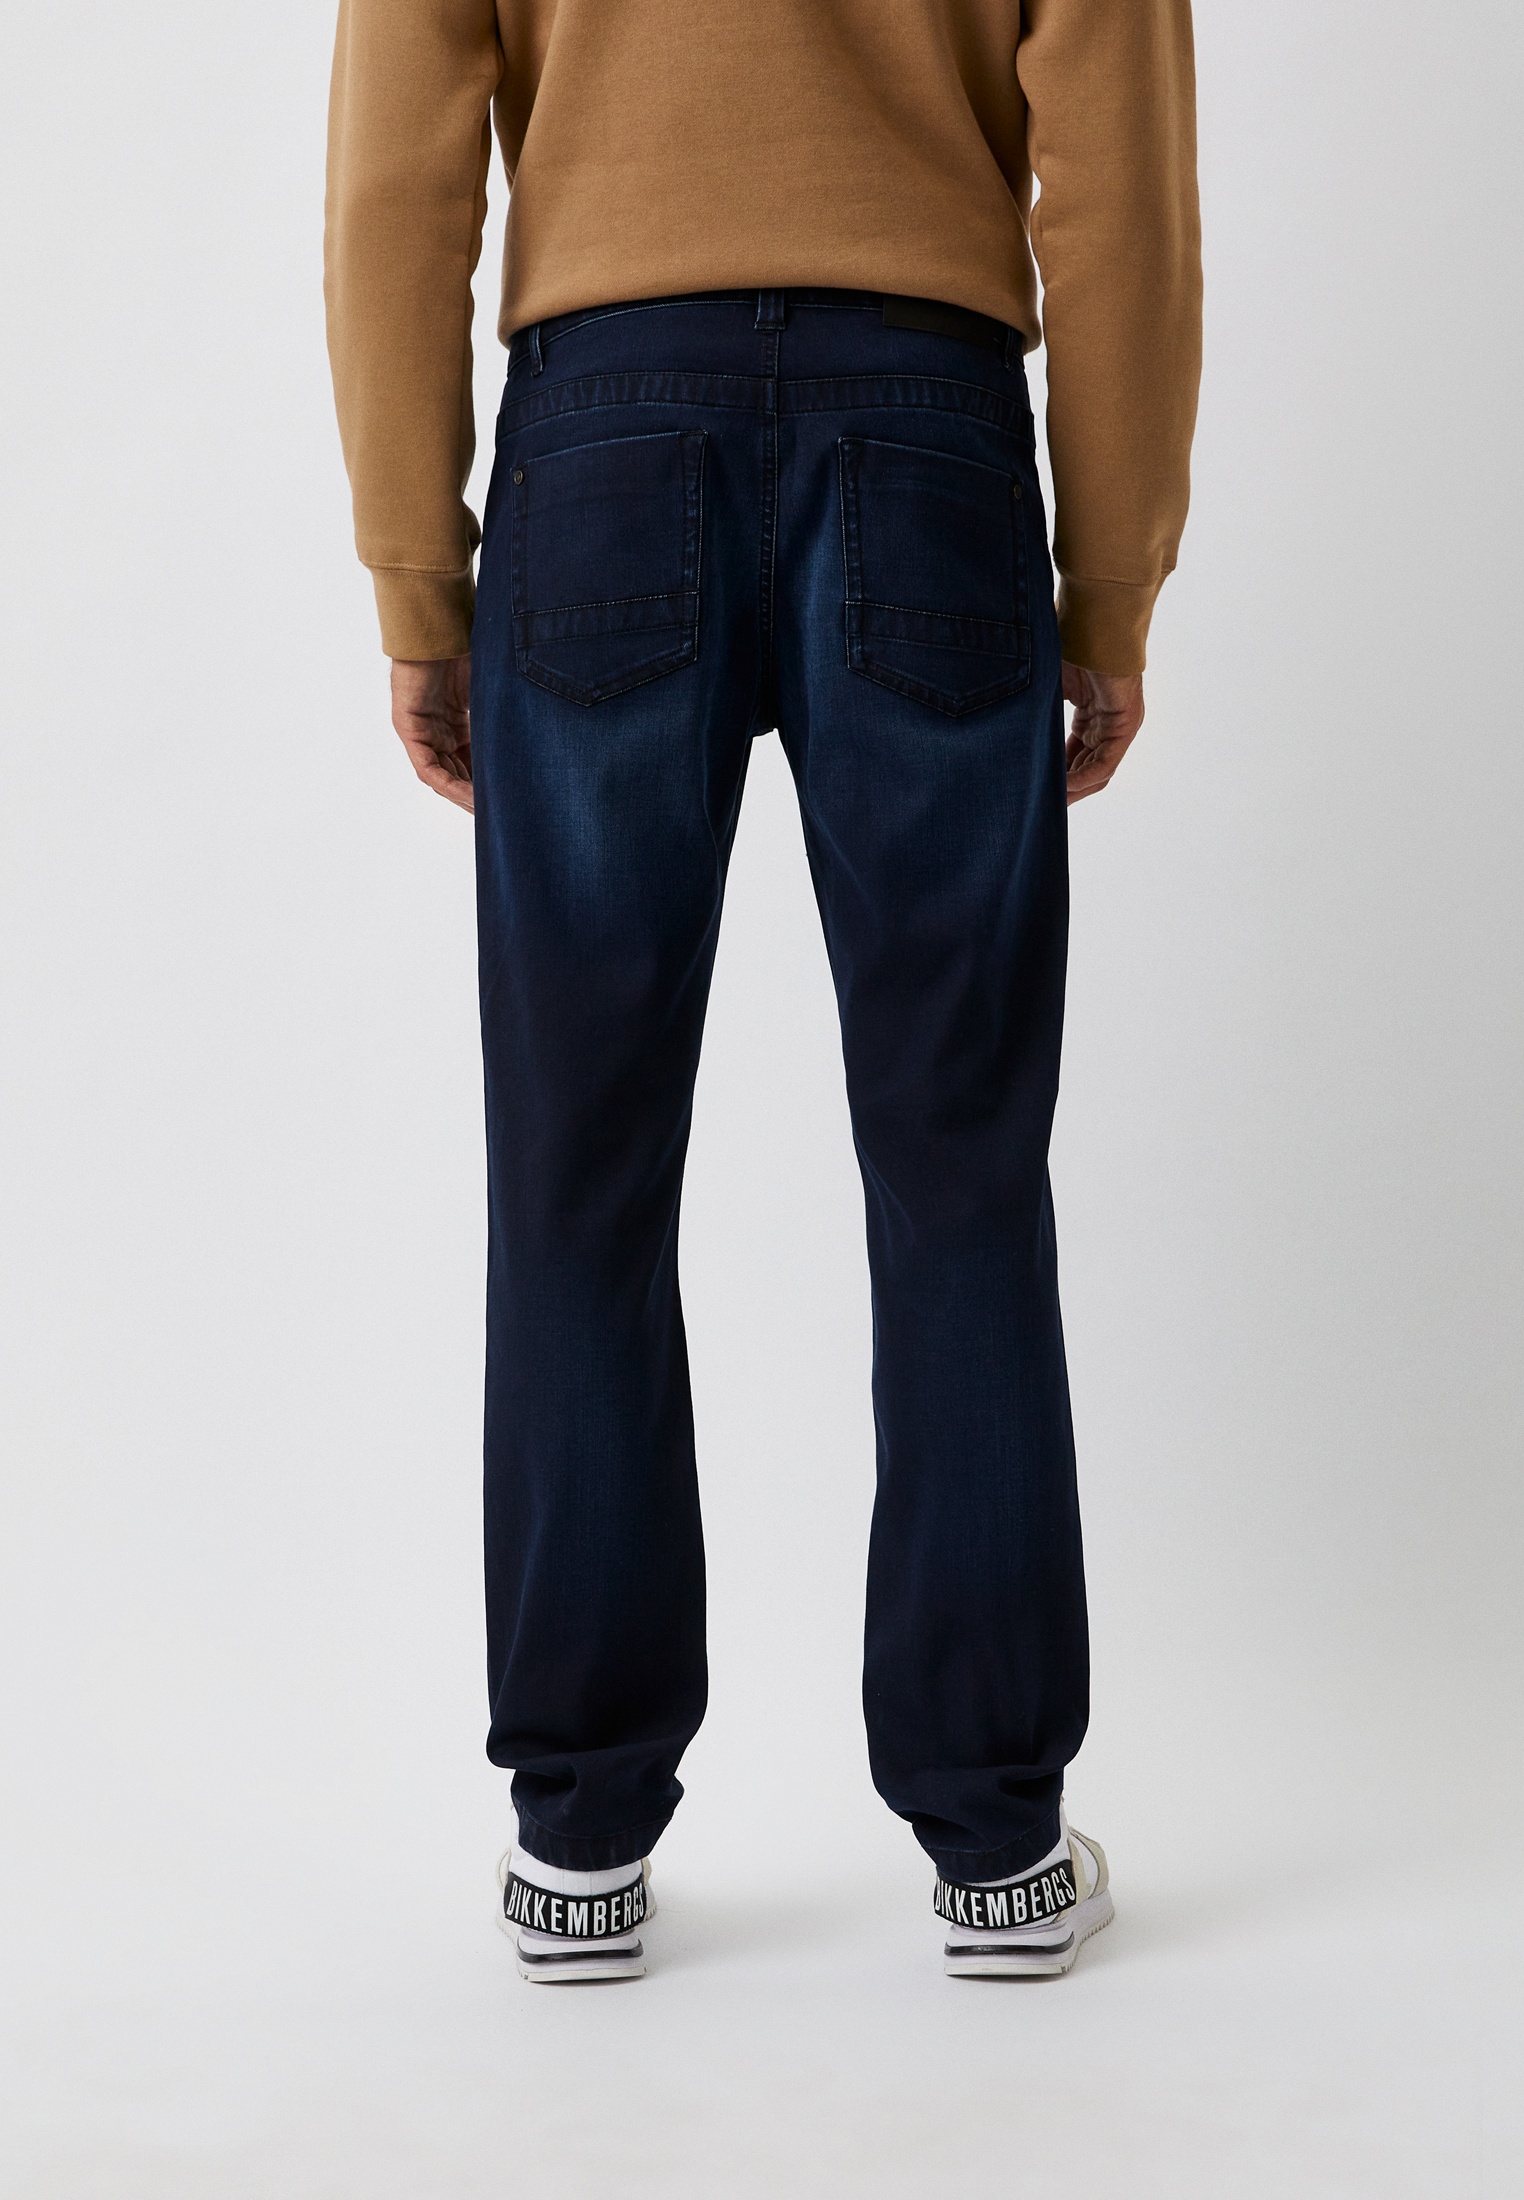 Мужские зауженные джинсы Bikkembergs (Биккембергс) C Q 102 1F S 3854: изображение 7